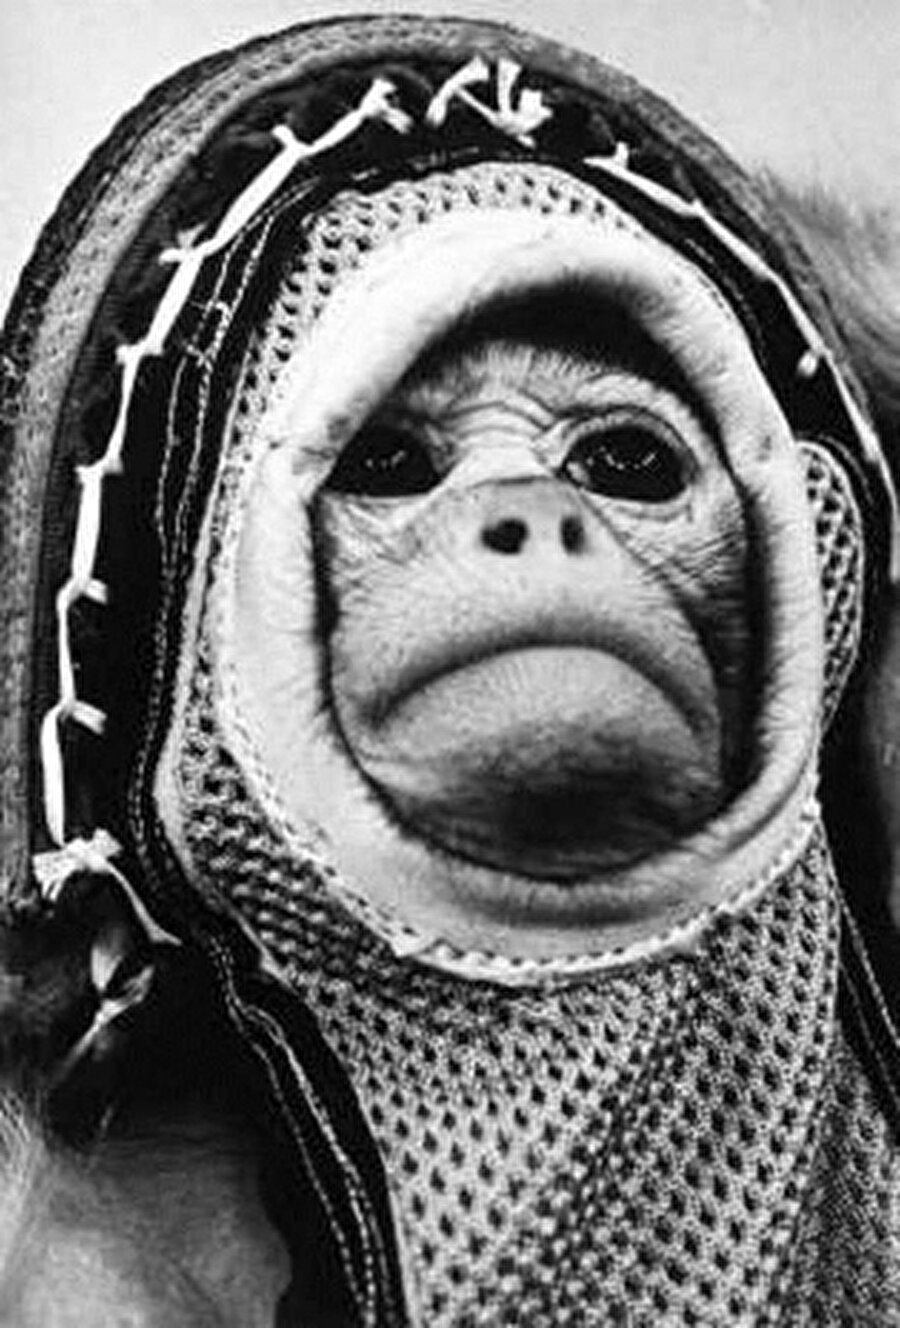 Gordo

                                    
                                    
                                    
                                    Küçük Adam adı verilen bu maymunun benzer bir eğitim sürecinden geçen “yoldaşı” Gordo, 1958 yılında yerden 500 km yüksekliğe ulaşan 15 dakikalık bir fırlatmaya katılmıştı.
                                
                                
                                
                                